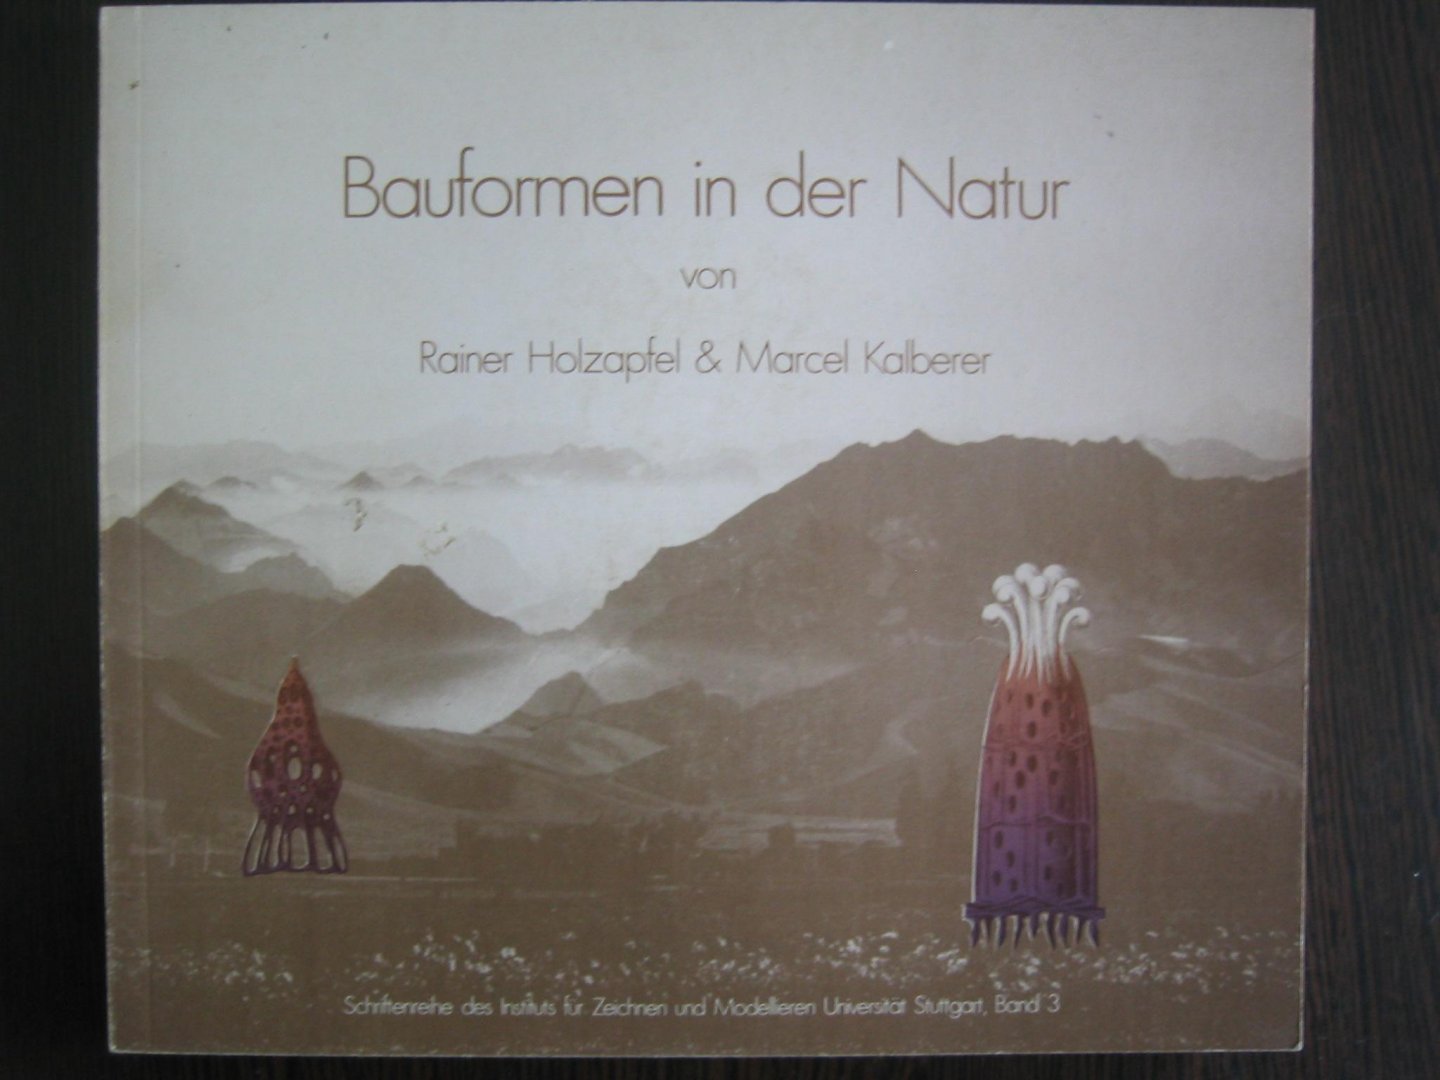 Rainer Holzapfel en Marcel Kalberer - Bauformen in der natur